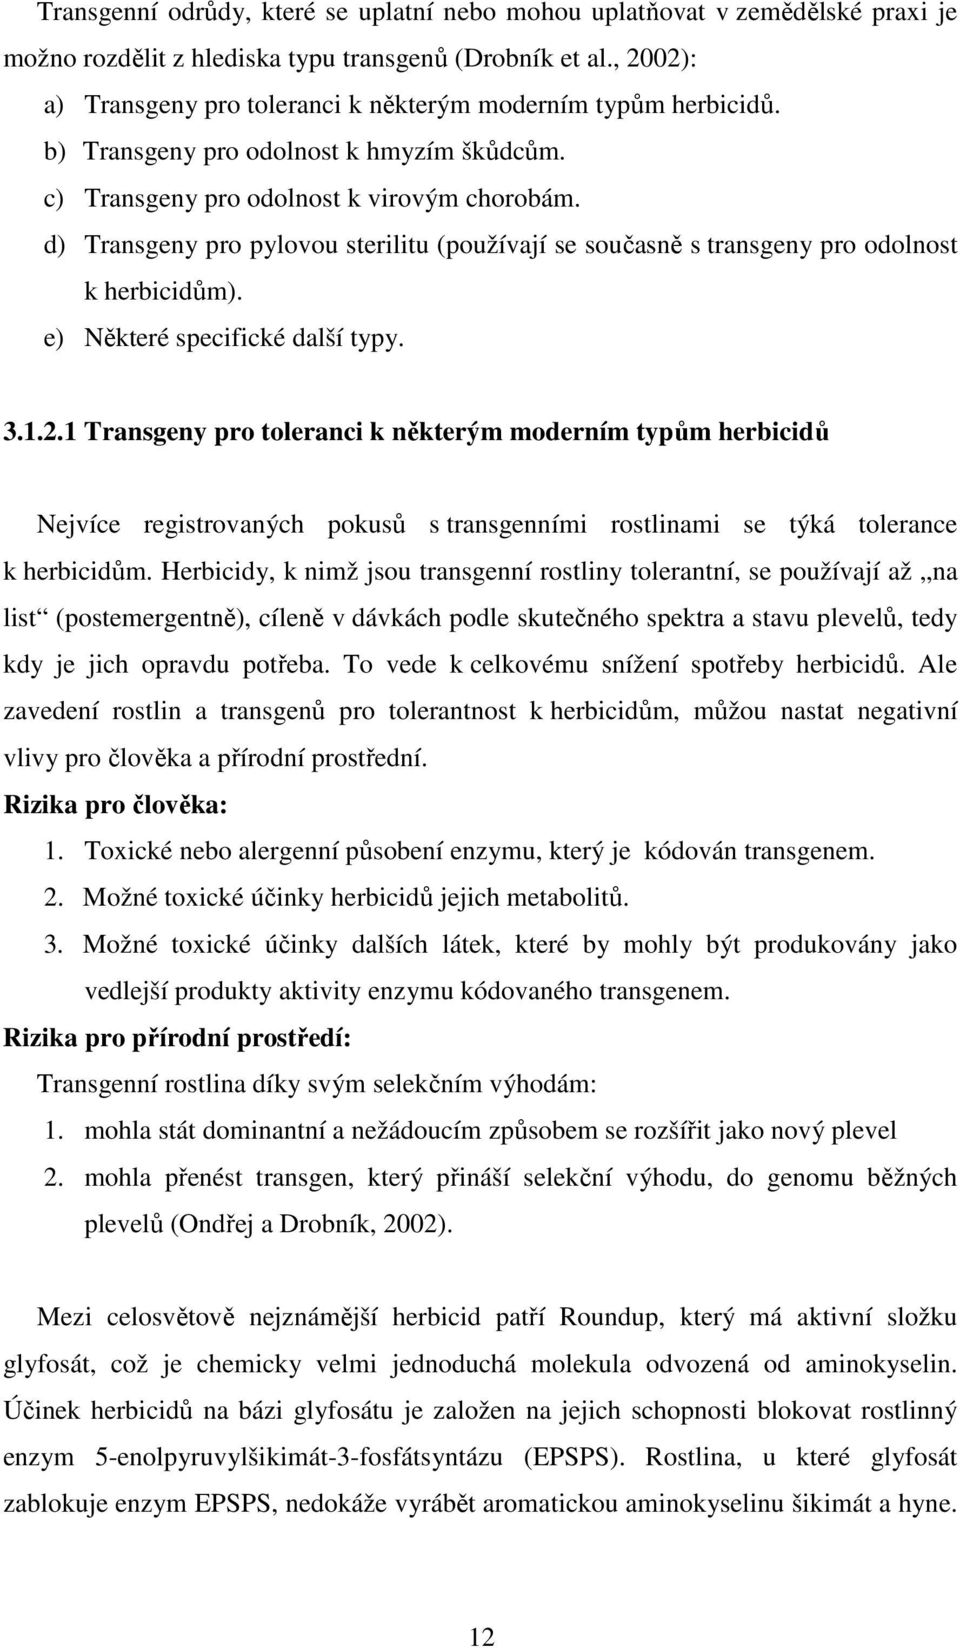 d) Transgeny pro pylovou sterilitu (používají se současně s transgeny pro odolnost k herbicidům). e) Některé specifické další typy. 3.1.2.